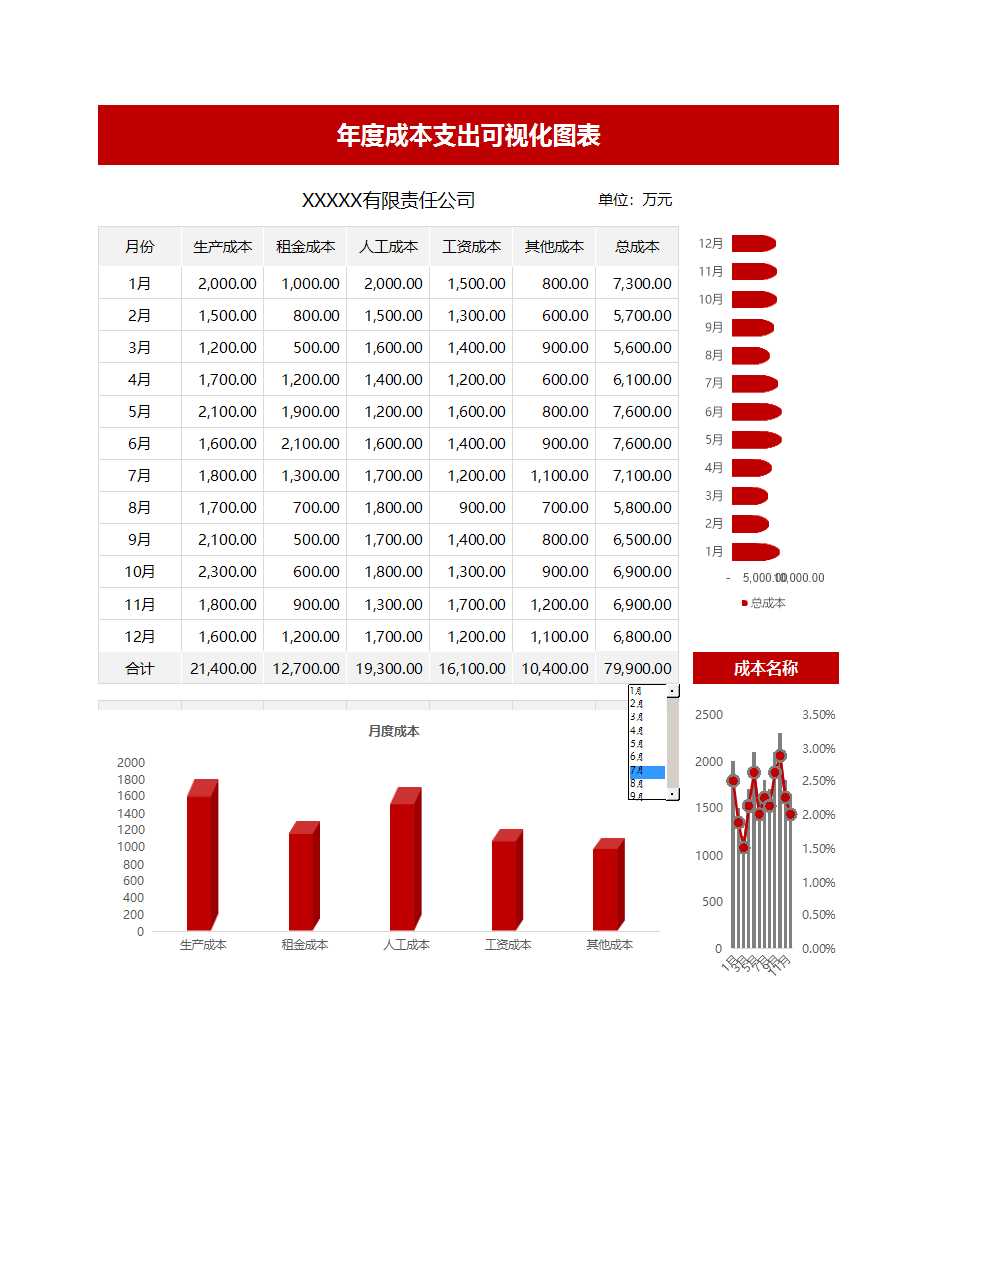 成本支出可视化图表-动态分析Excel模板